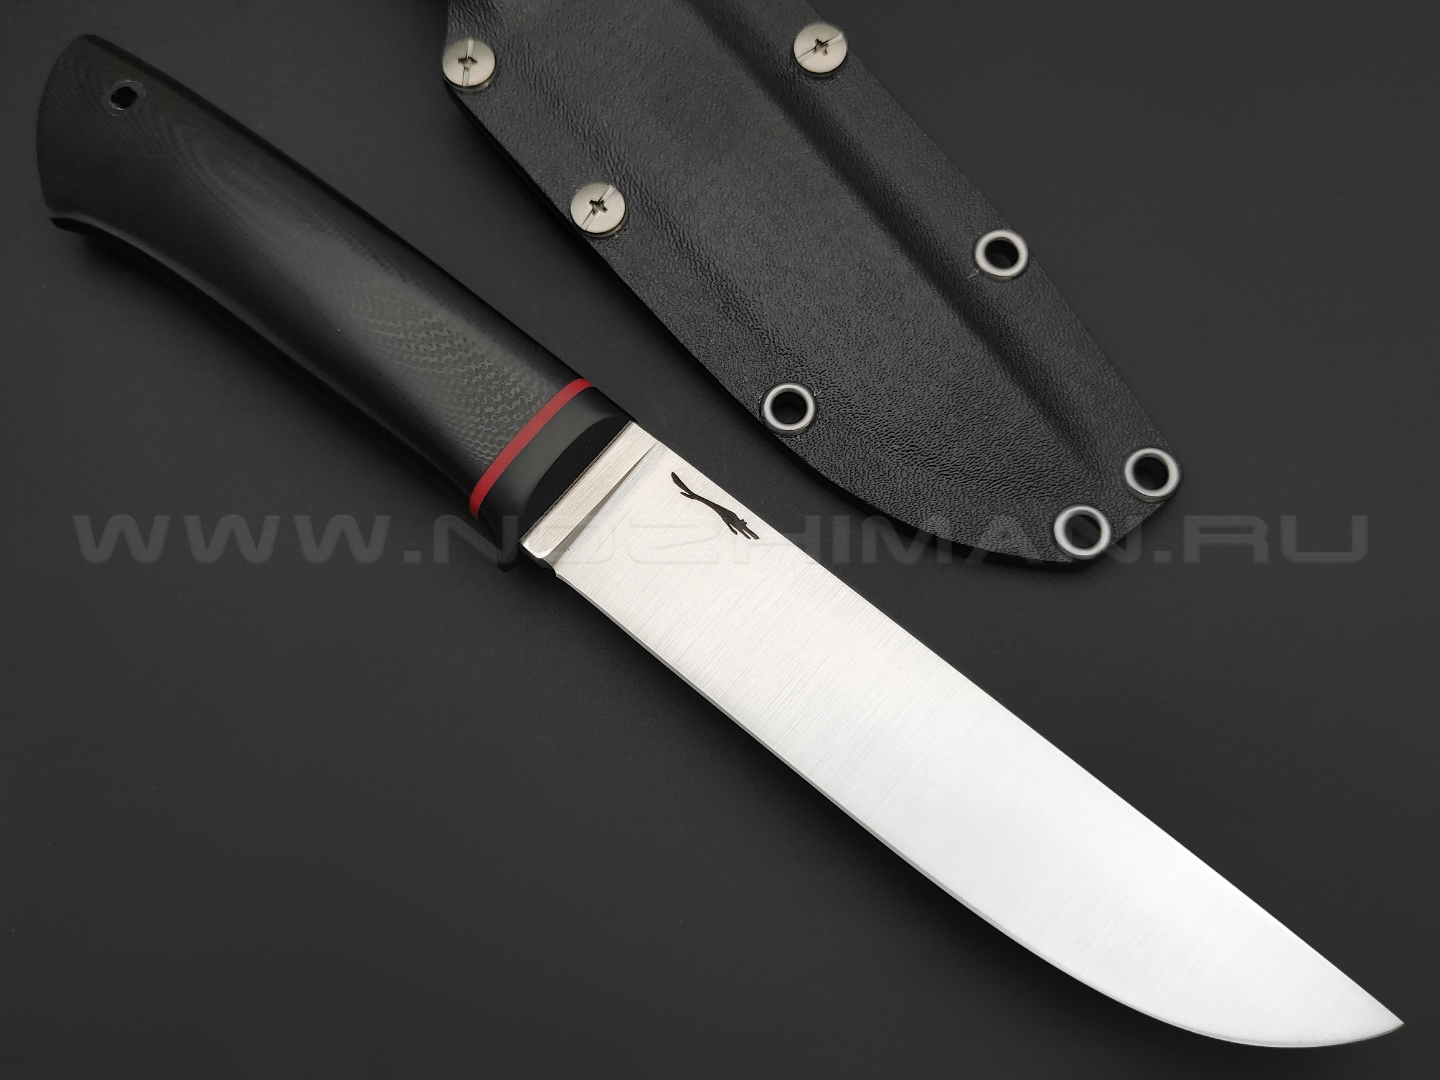 Волчий Век нож Слоник сталь 95Х18 WA satin, рукоять G10 black